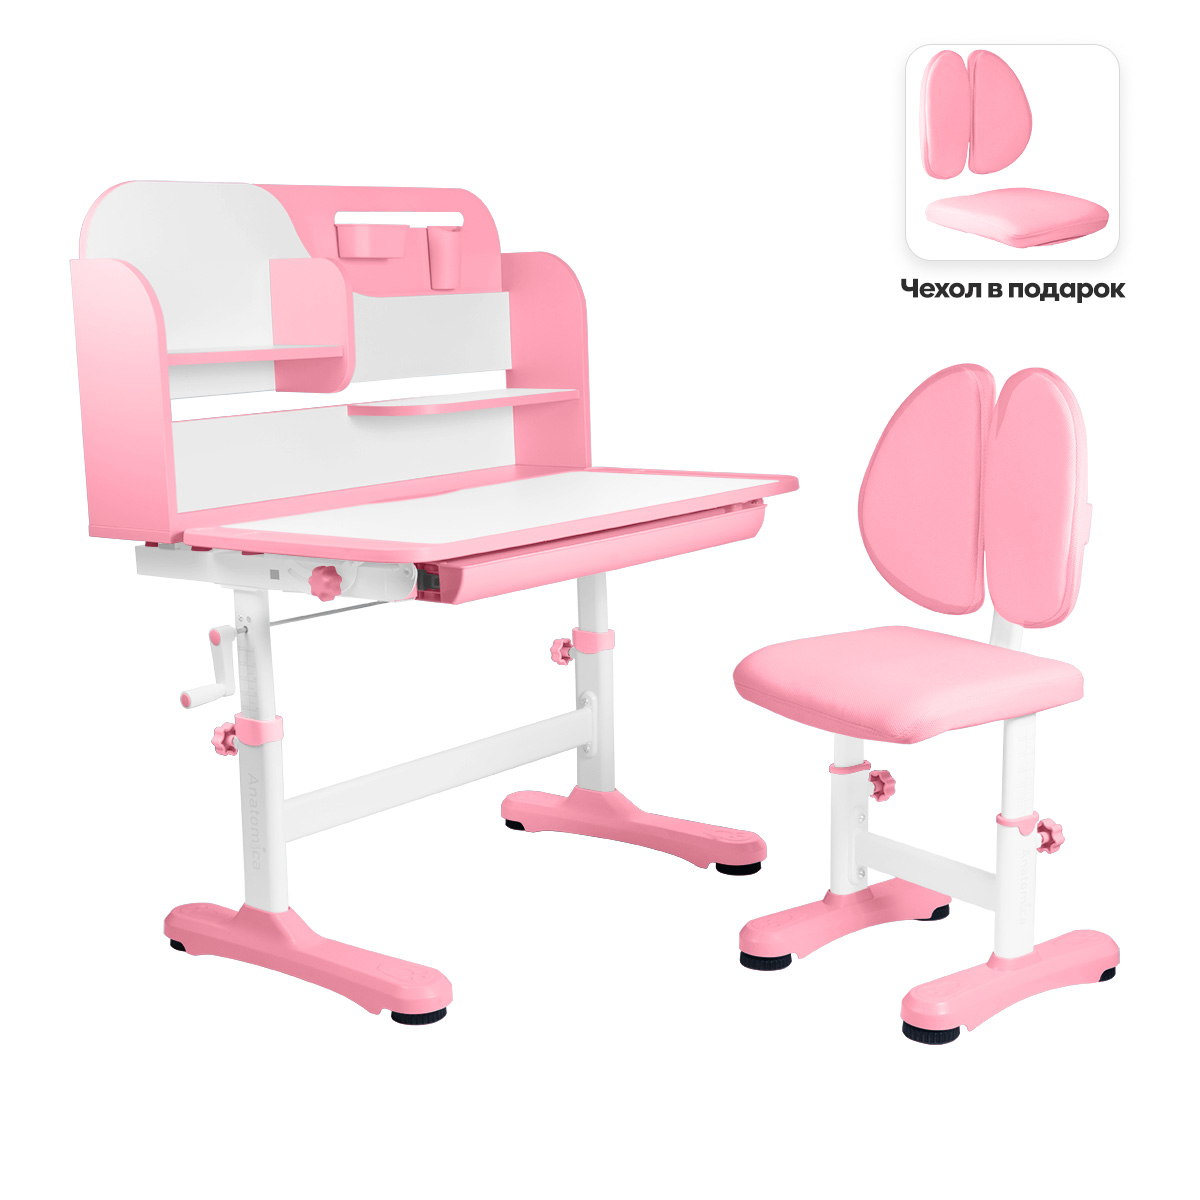 Комплект парта и стульчик Anatomica Amadeo розовый